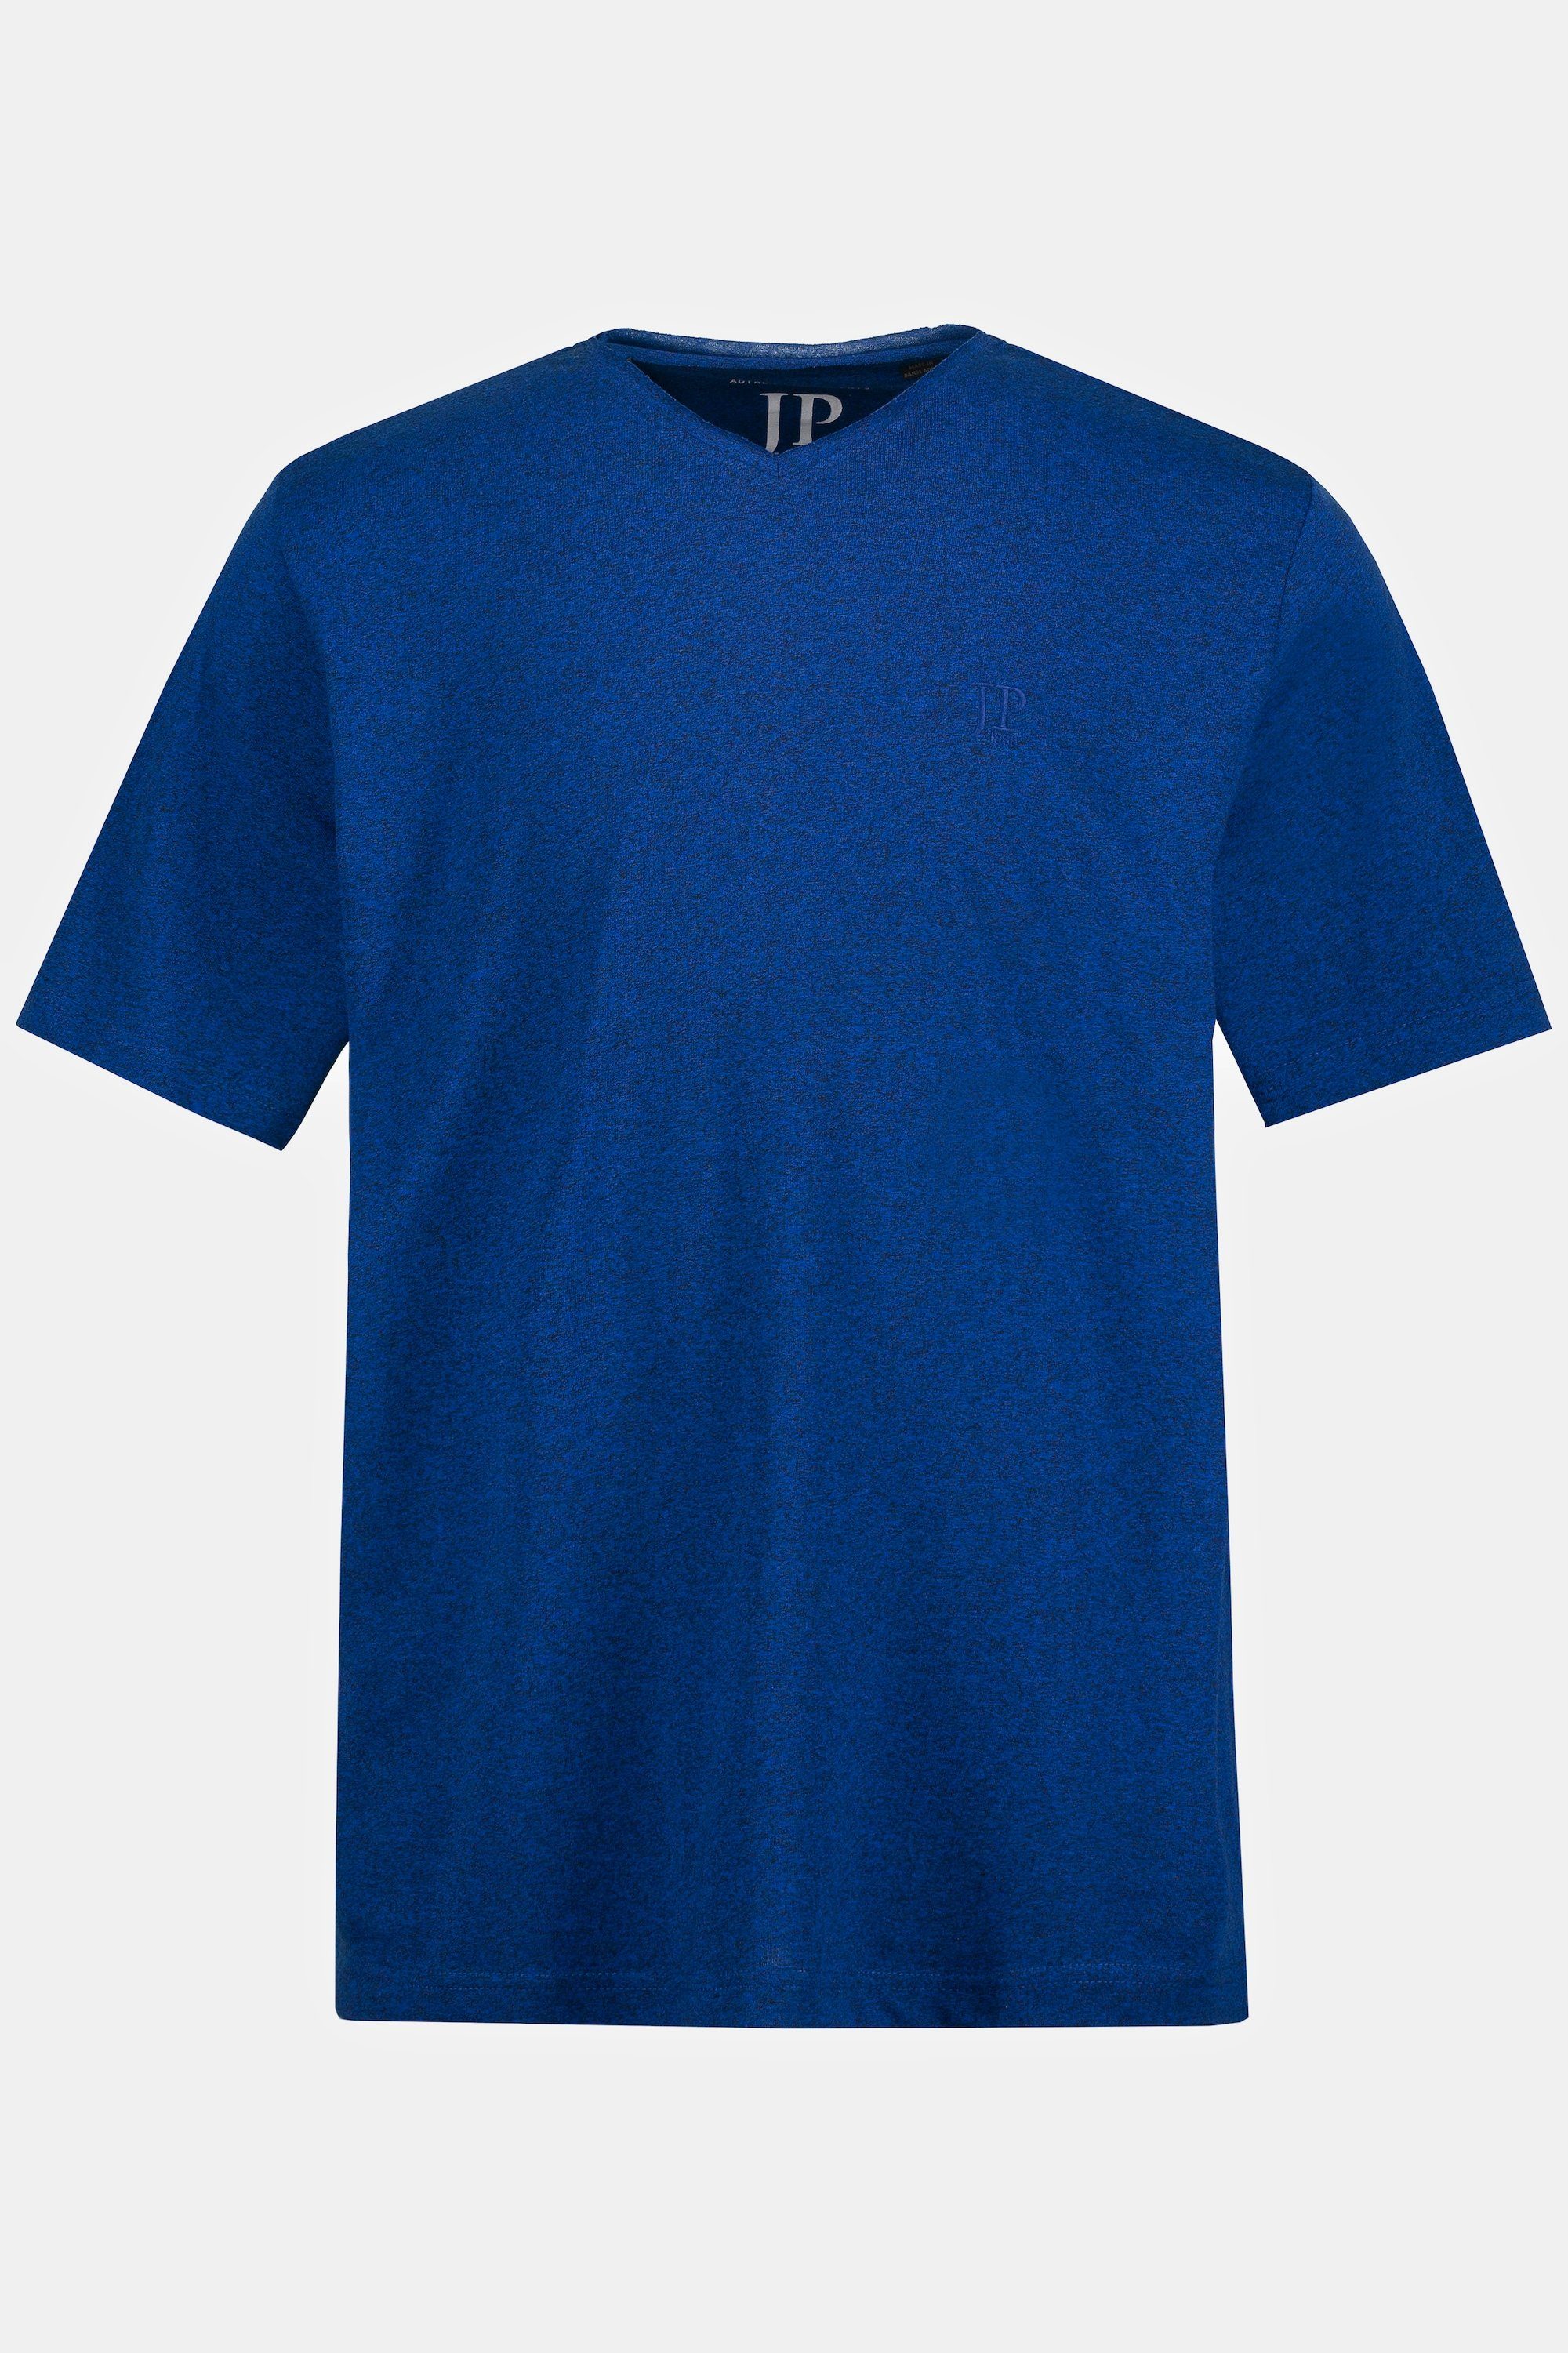 T-Shirt T-Shirt Halbarm clematisblau V-Ausschnitt JP1880